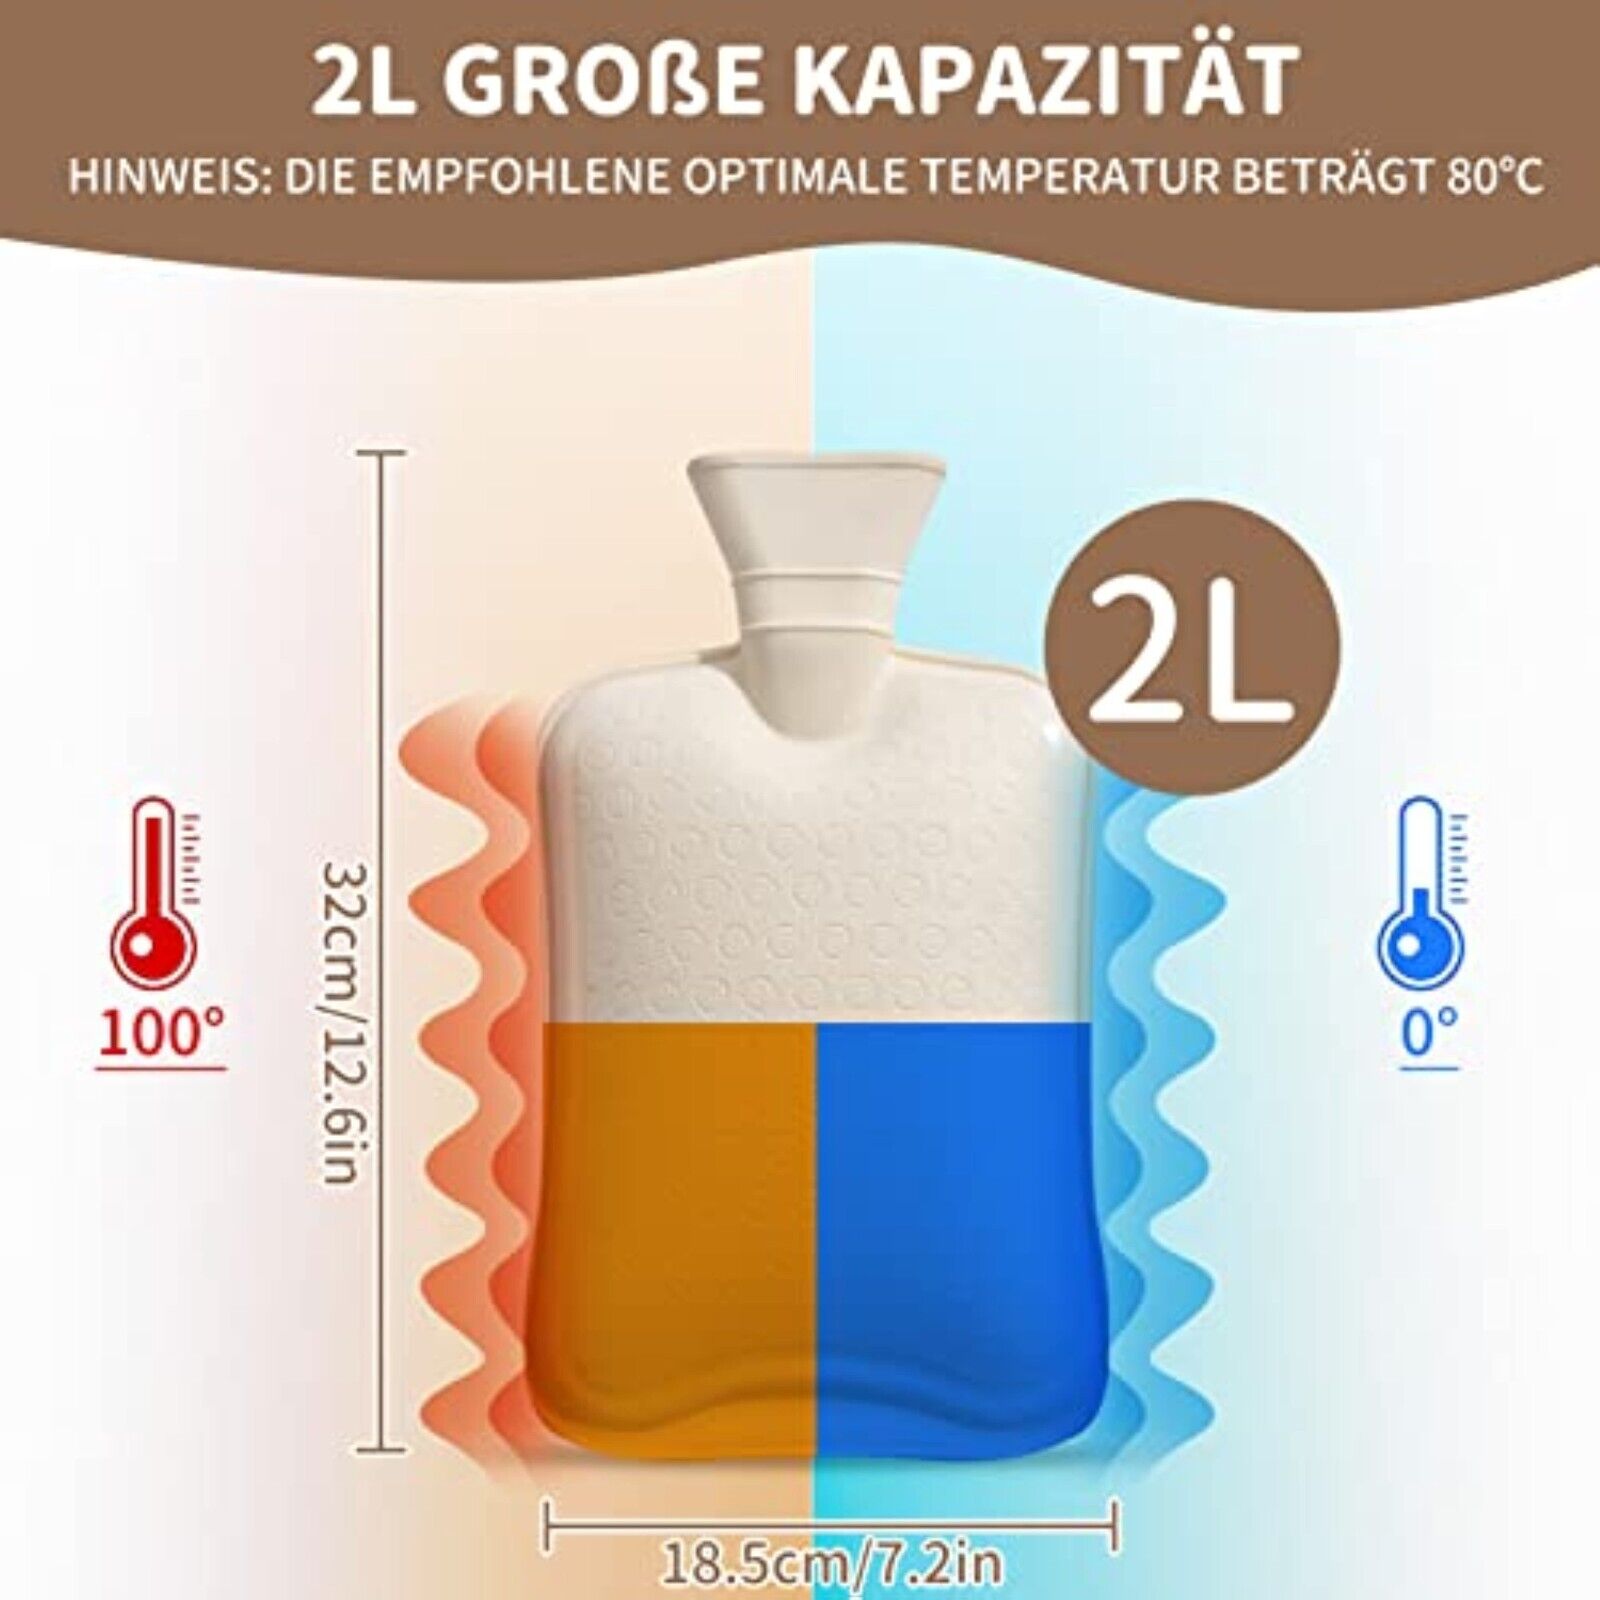 XXL Wärmflasche 2 Liter mit BEZUG Gummi 2L Wärmekissen Bettflasche Wärmeflasche